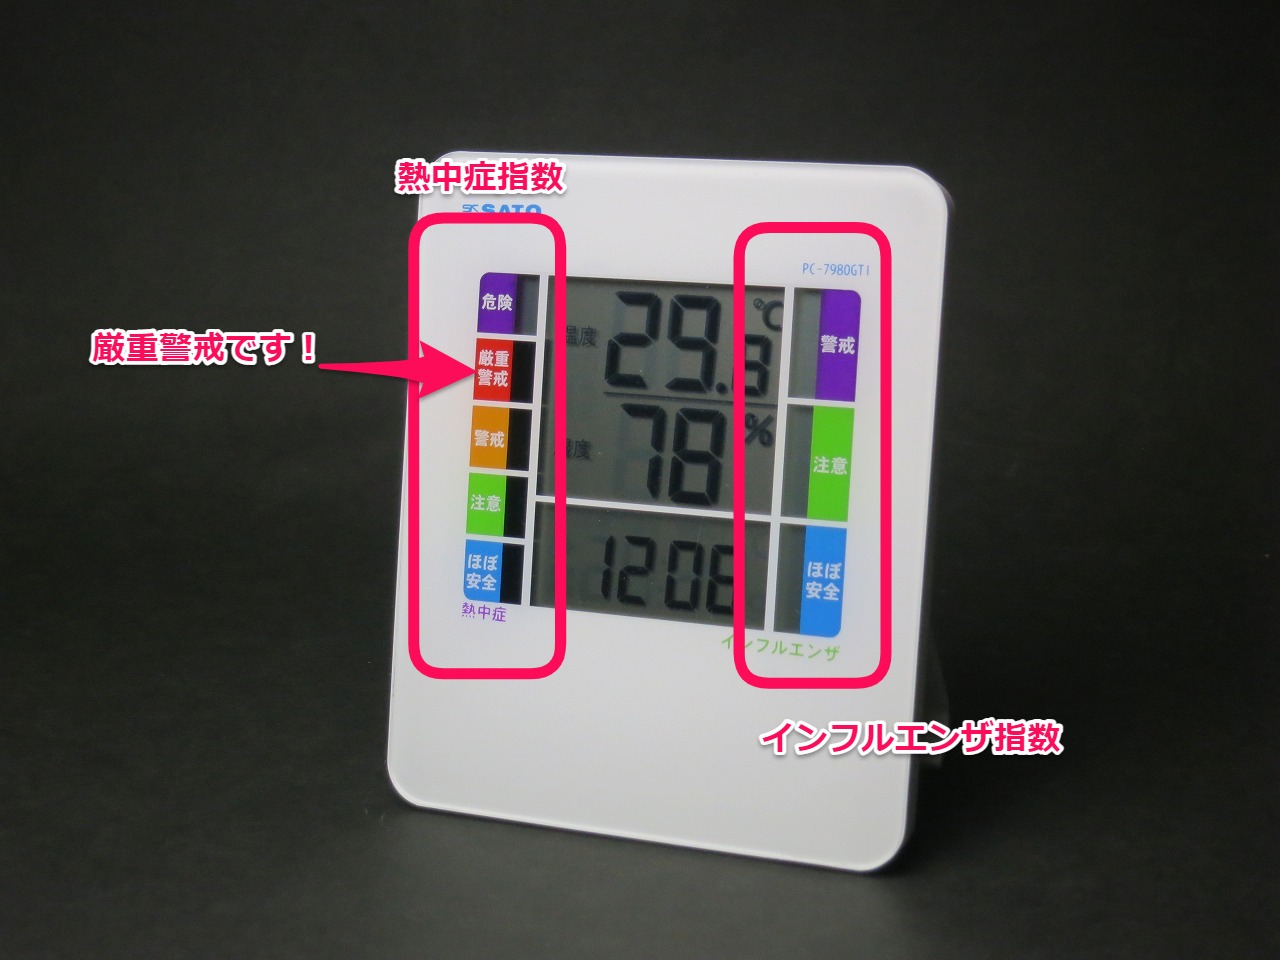 デジタル温湿度計 PC-7980GTI 